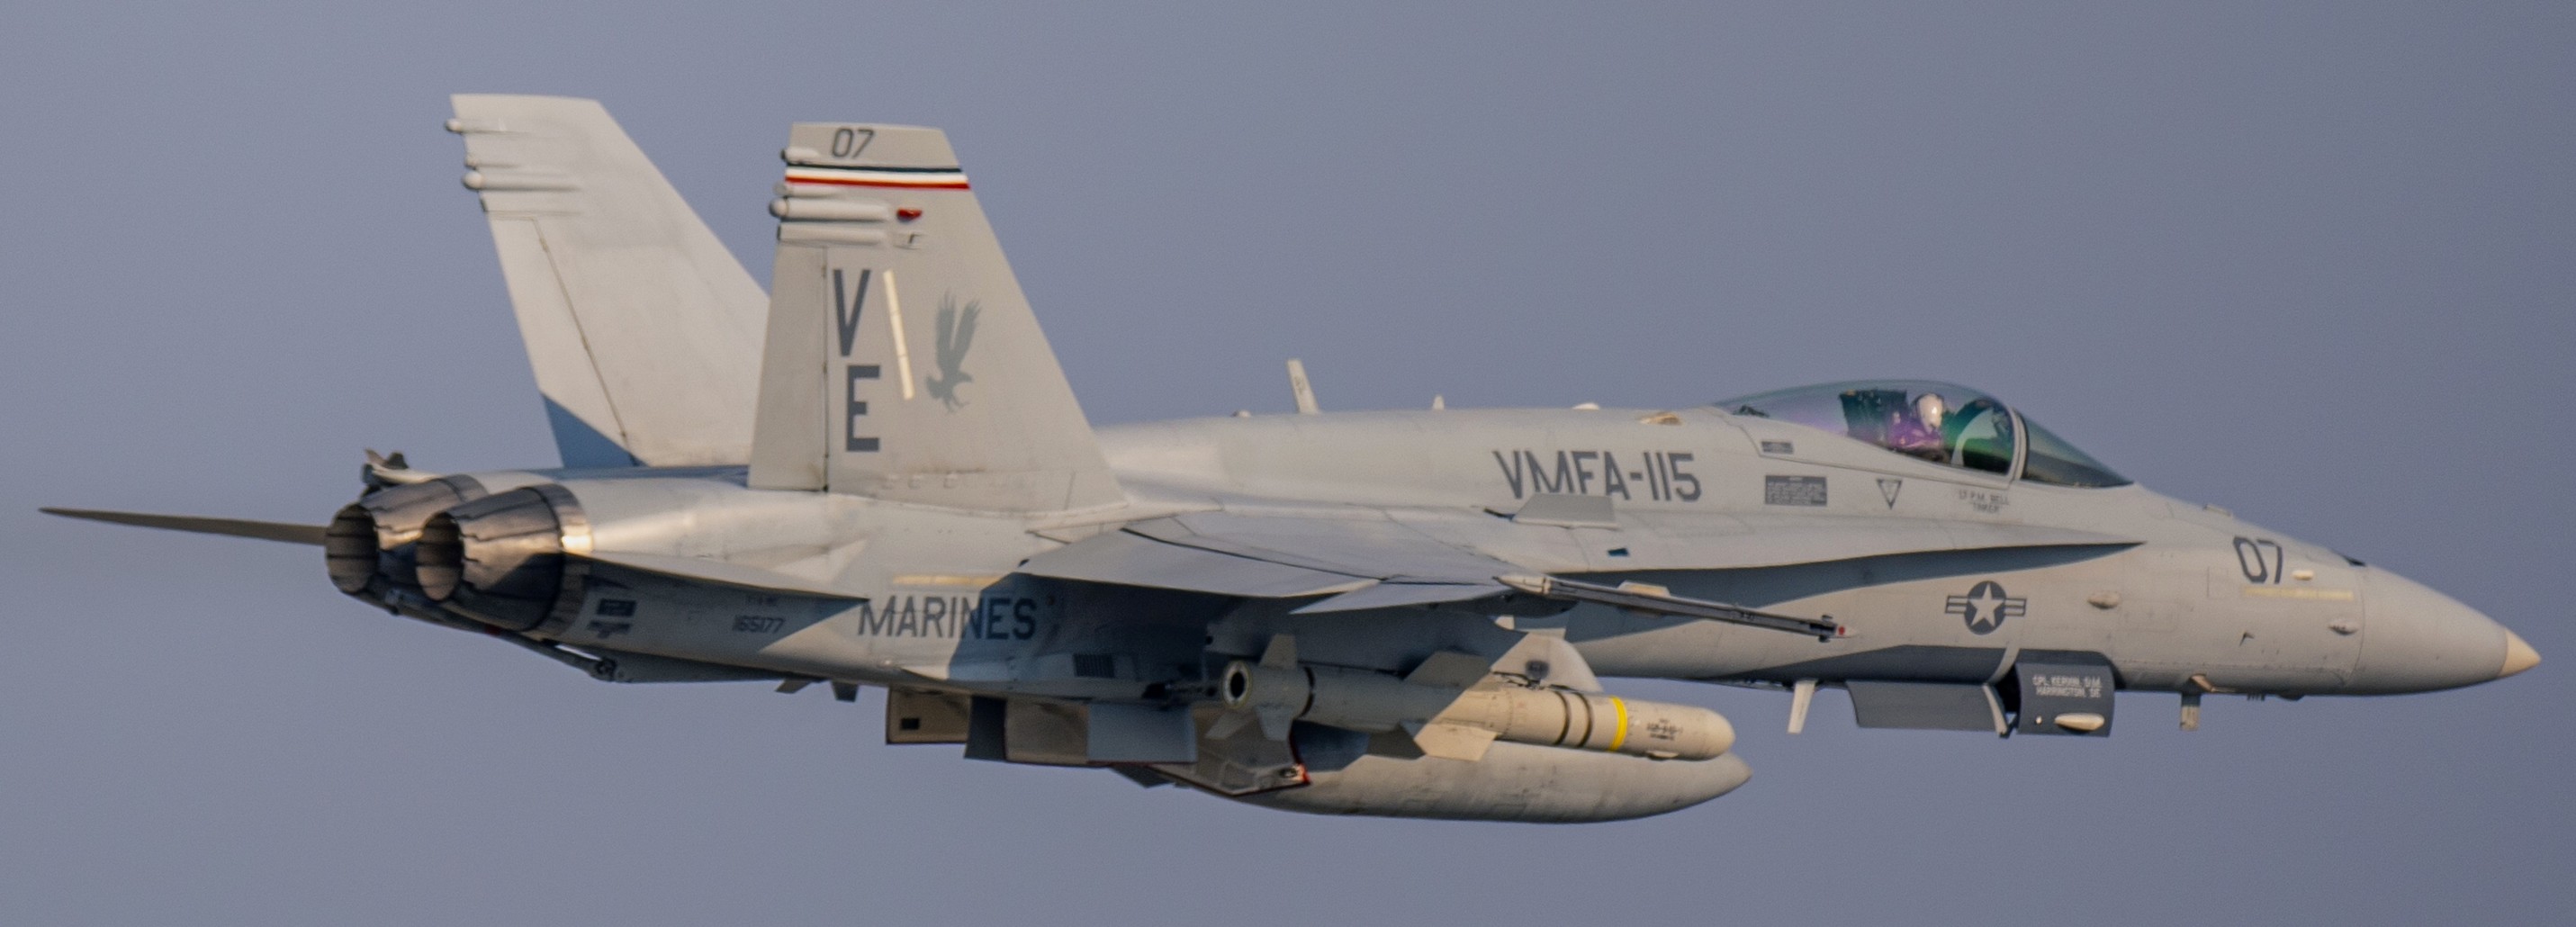 vmfa-115 silver eagles marine fighter attack squadron usmc f/a-18c hornet 191